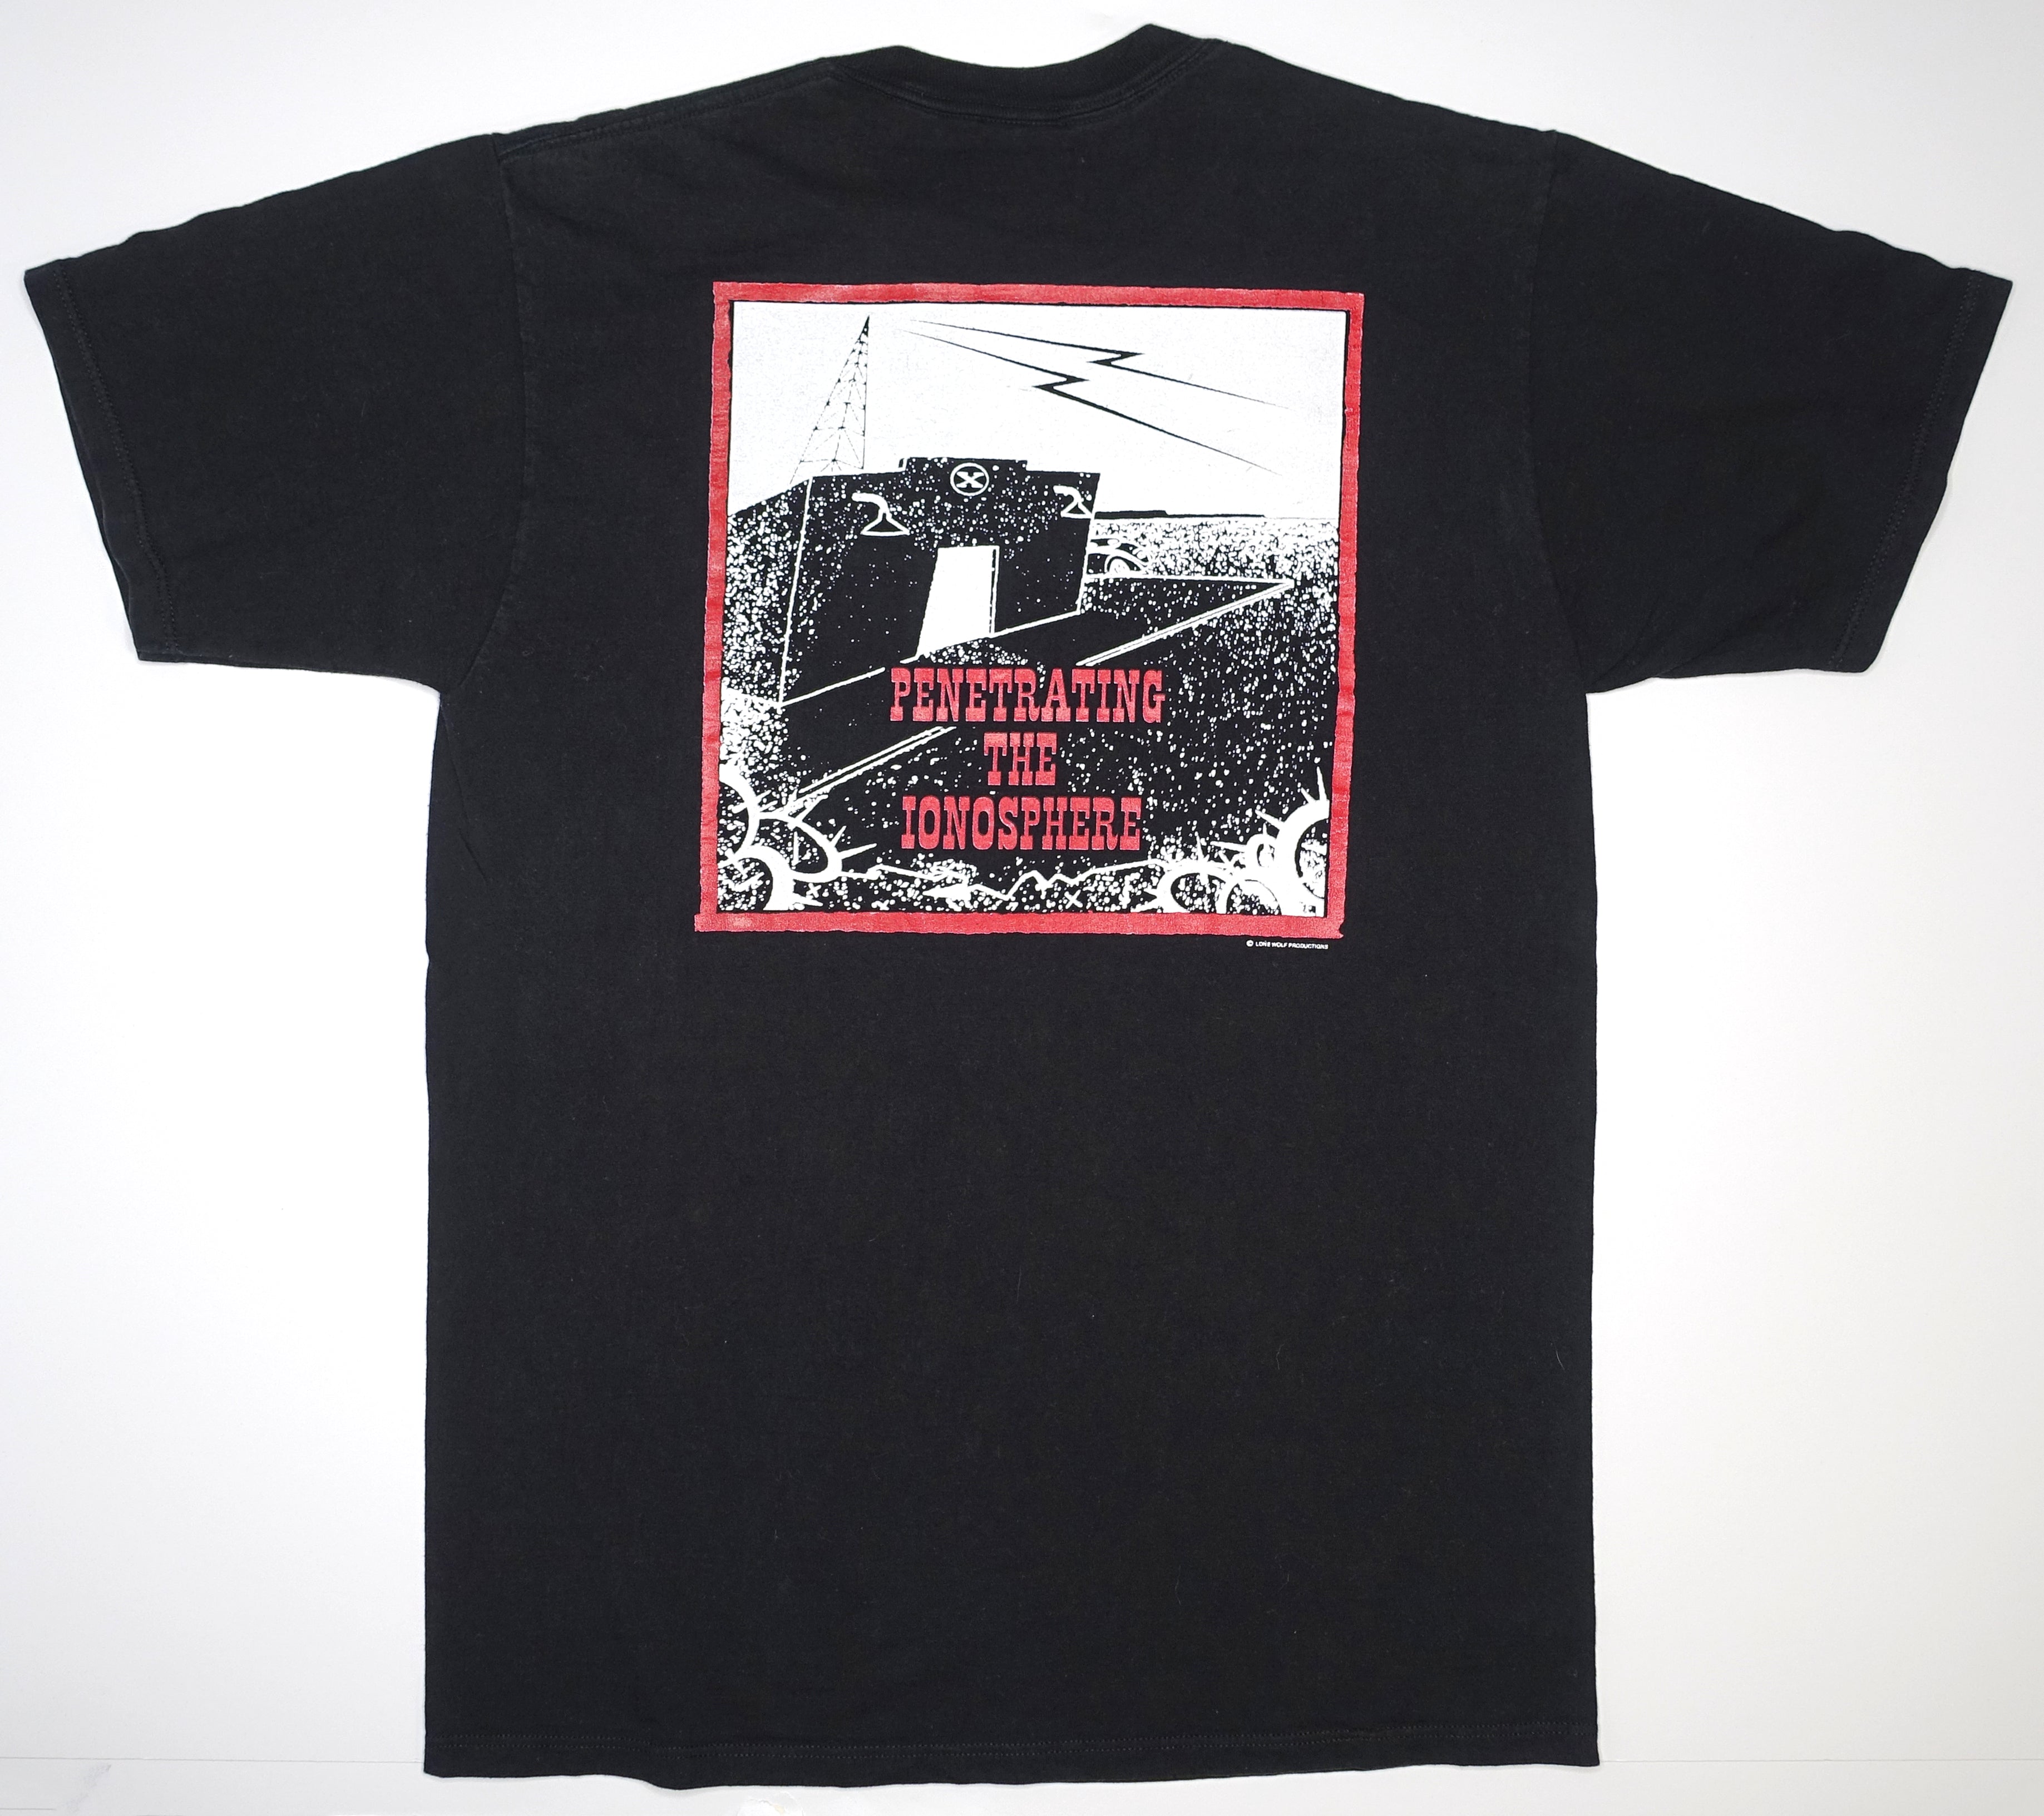 ZZ Top – Antenna 1993 Tour Shirt Size Large